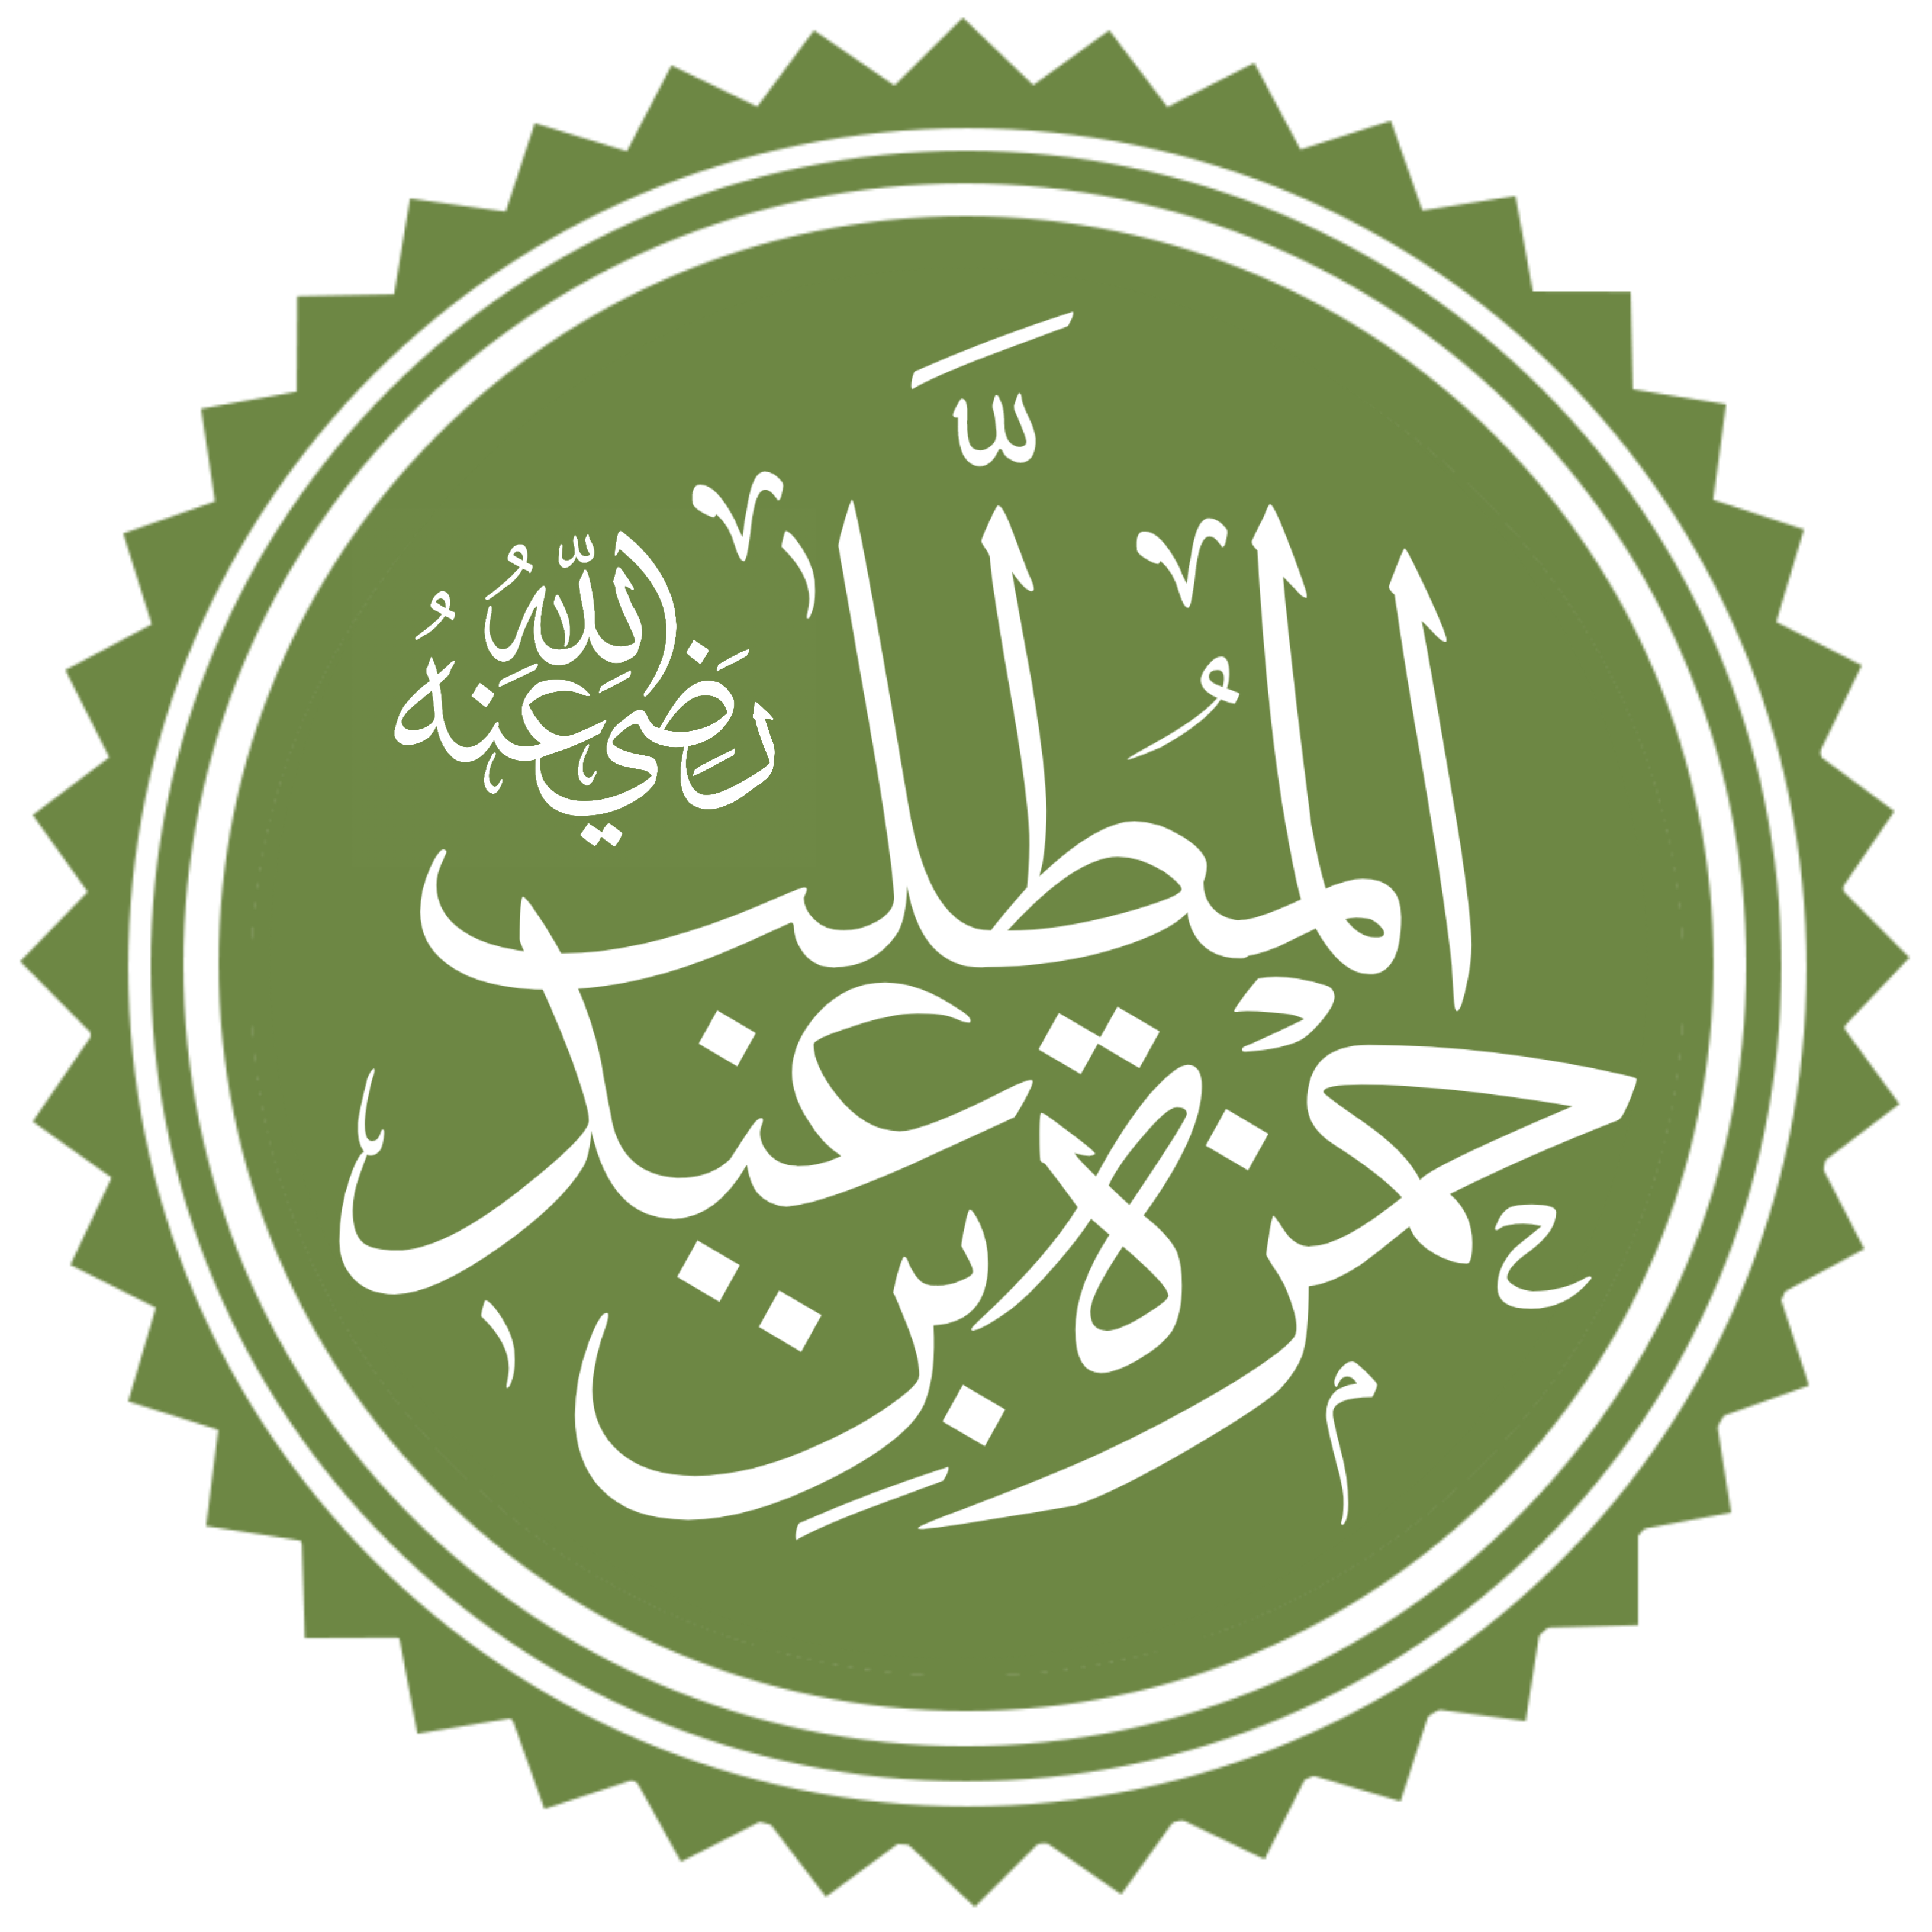 Hamza ibn ‘Abd al-Muttalib